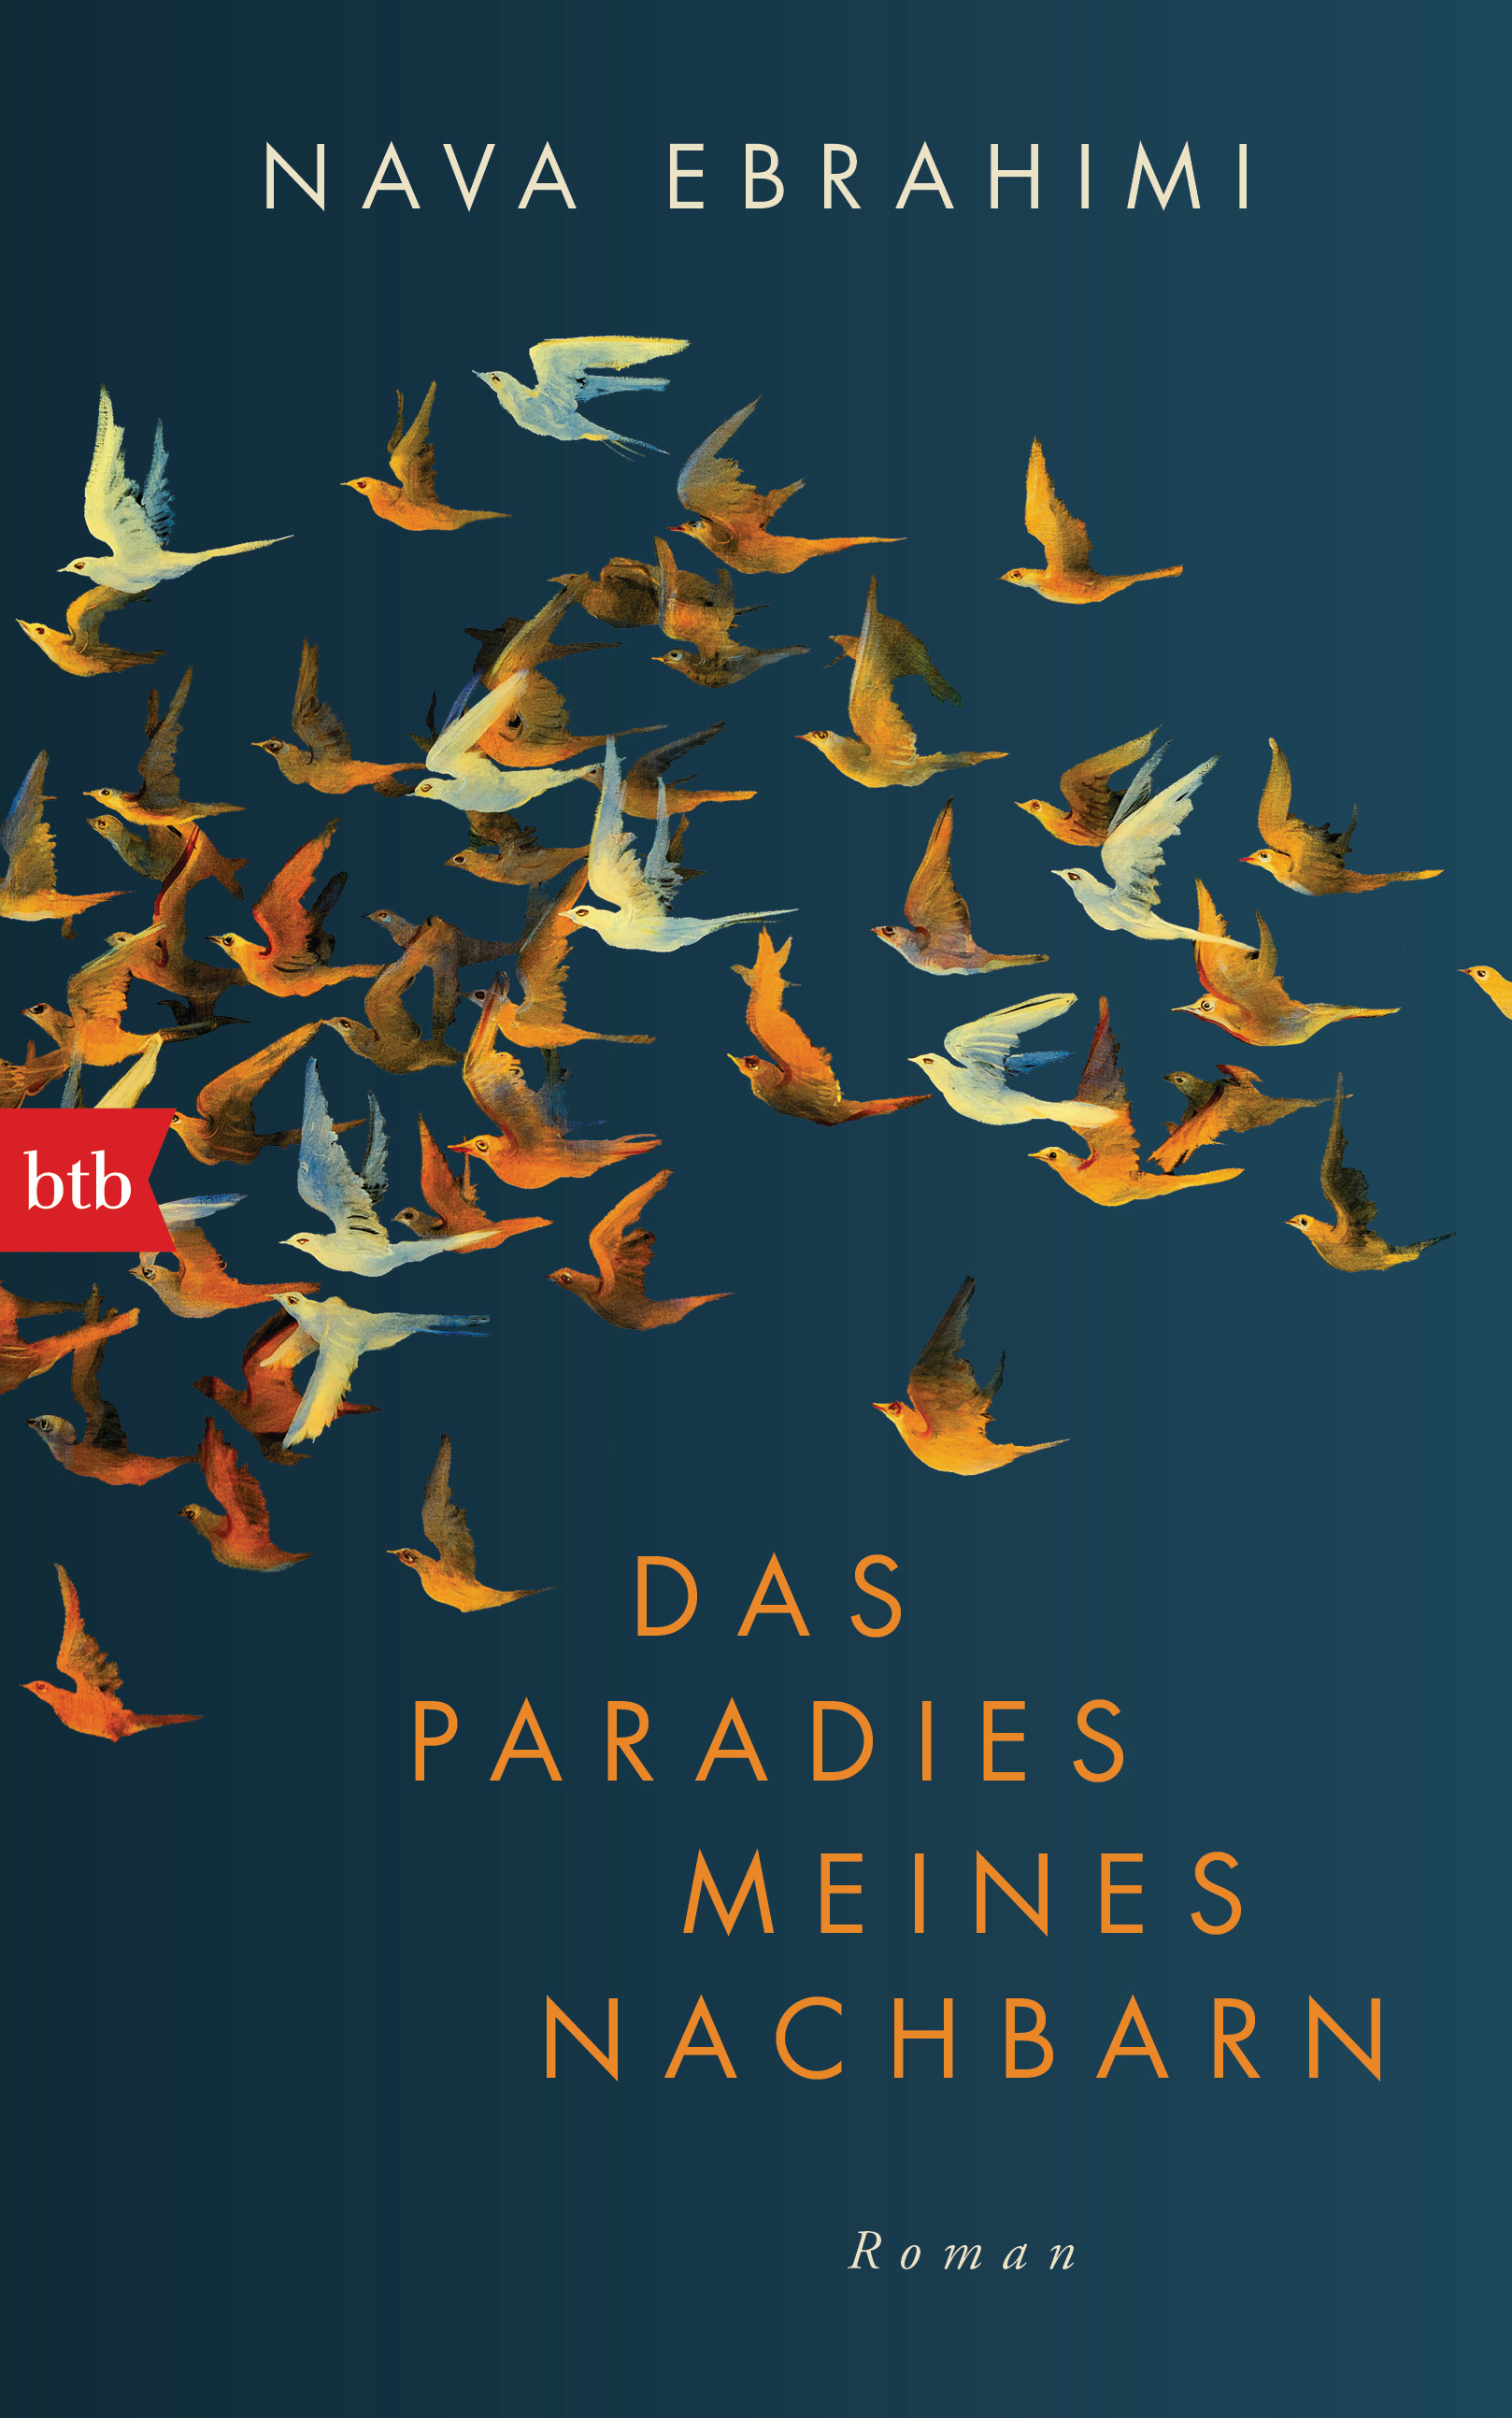 Buchcover Nava Ebrahimi: "Das Paradies meines Nachbarn"  im btb-Verlag